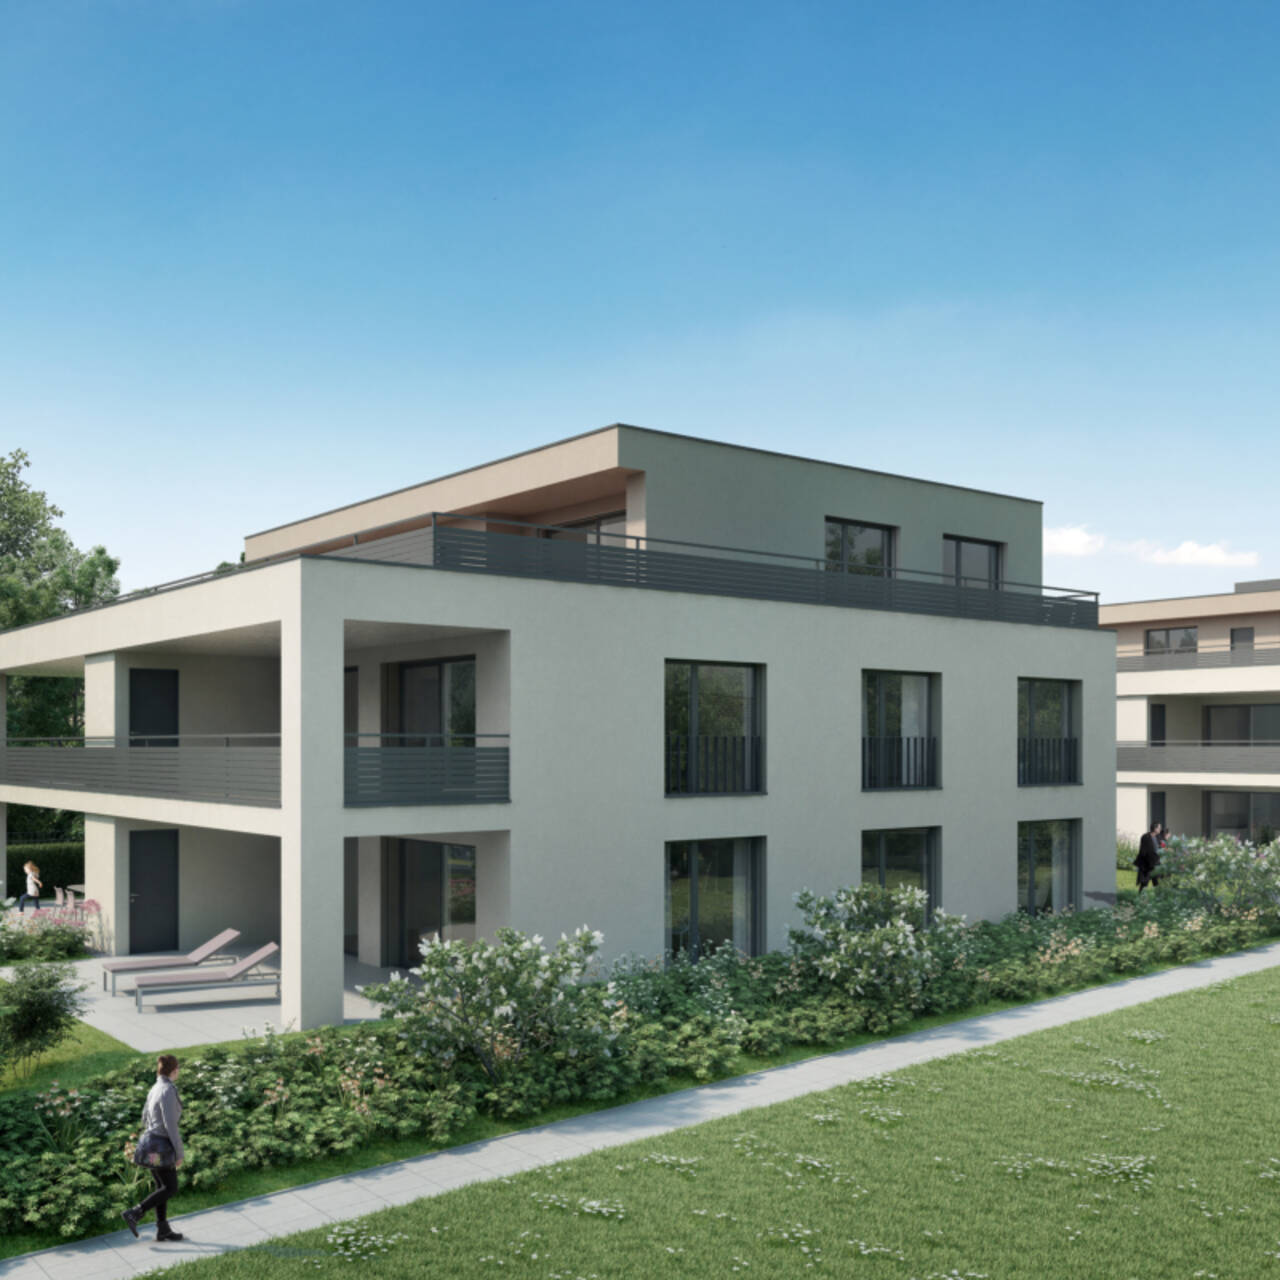 Visualisierung Neubau Sunnefeld in Gipf-Oberfrick - Seitliche Gebäudeansicht